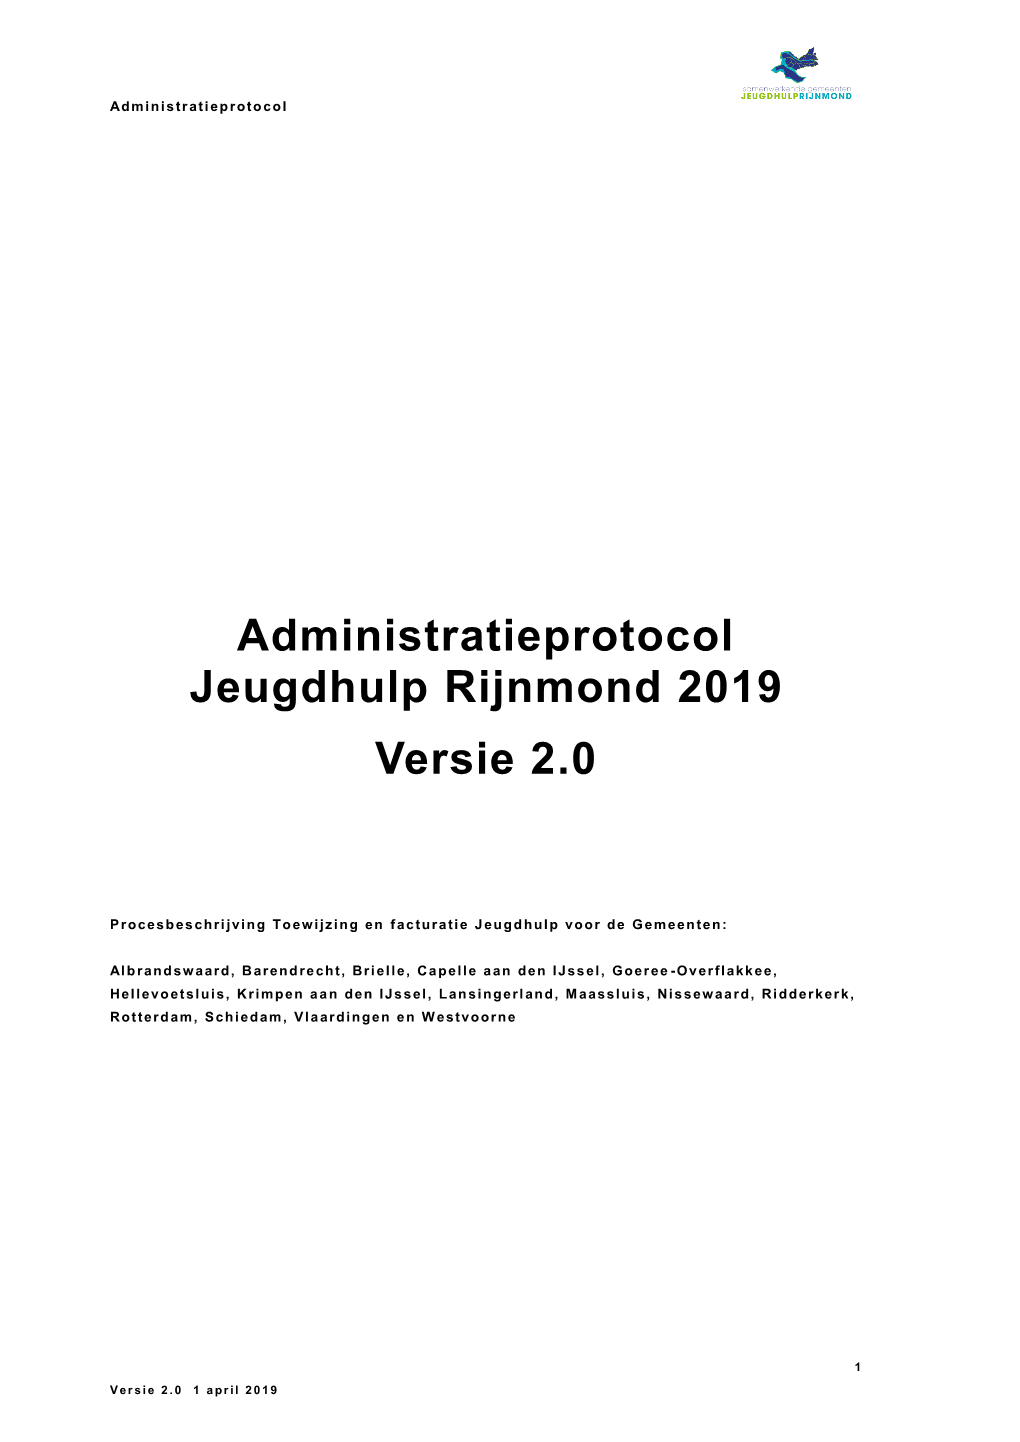 Administratieprotocol Jeugdhulp Rijnmond 2019 Versie 2.0